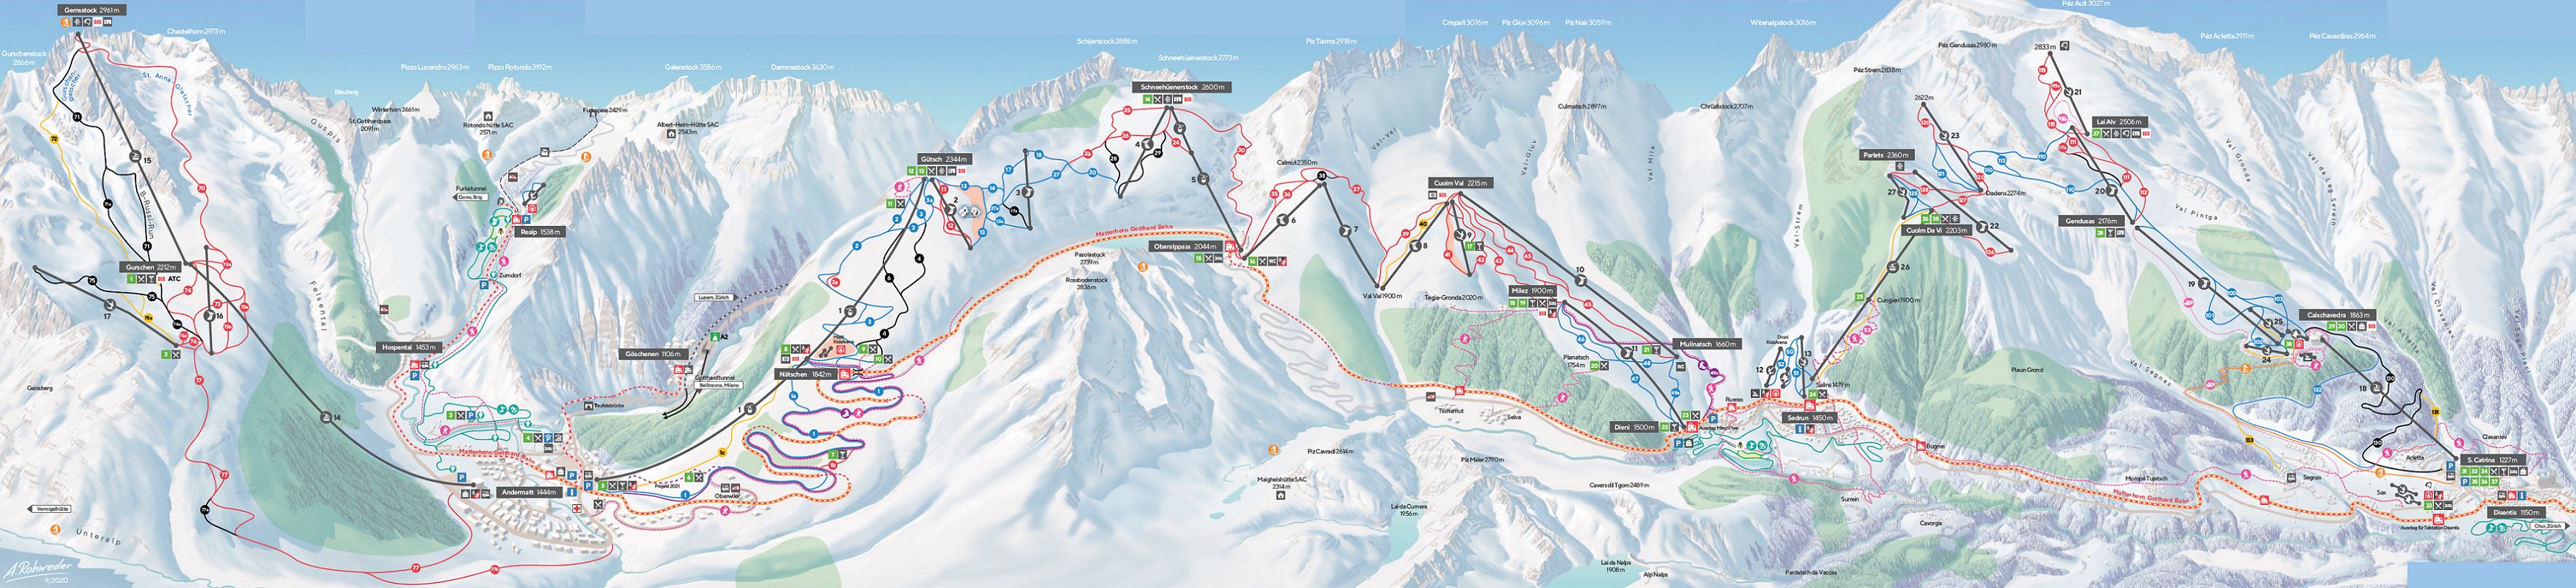 Andermatt-Sedrun-Disentis Ski Trail Map